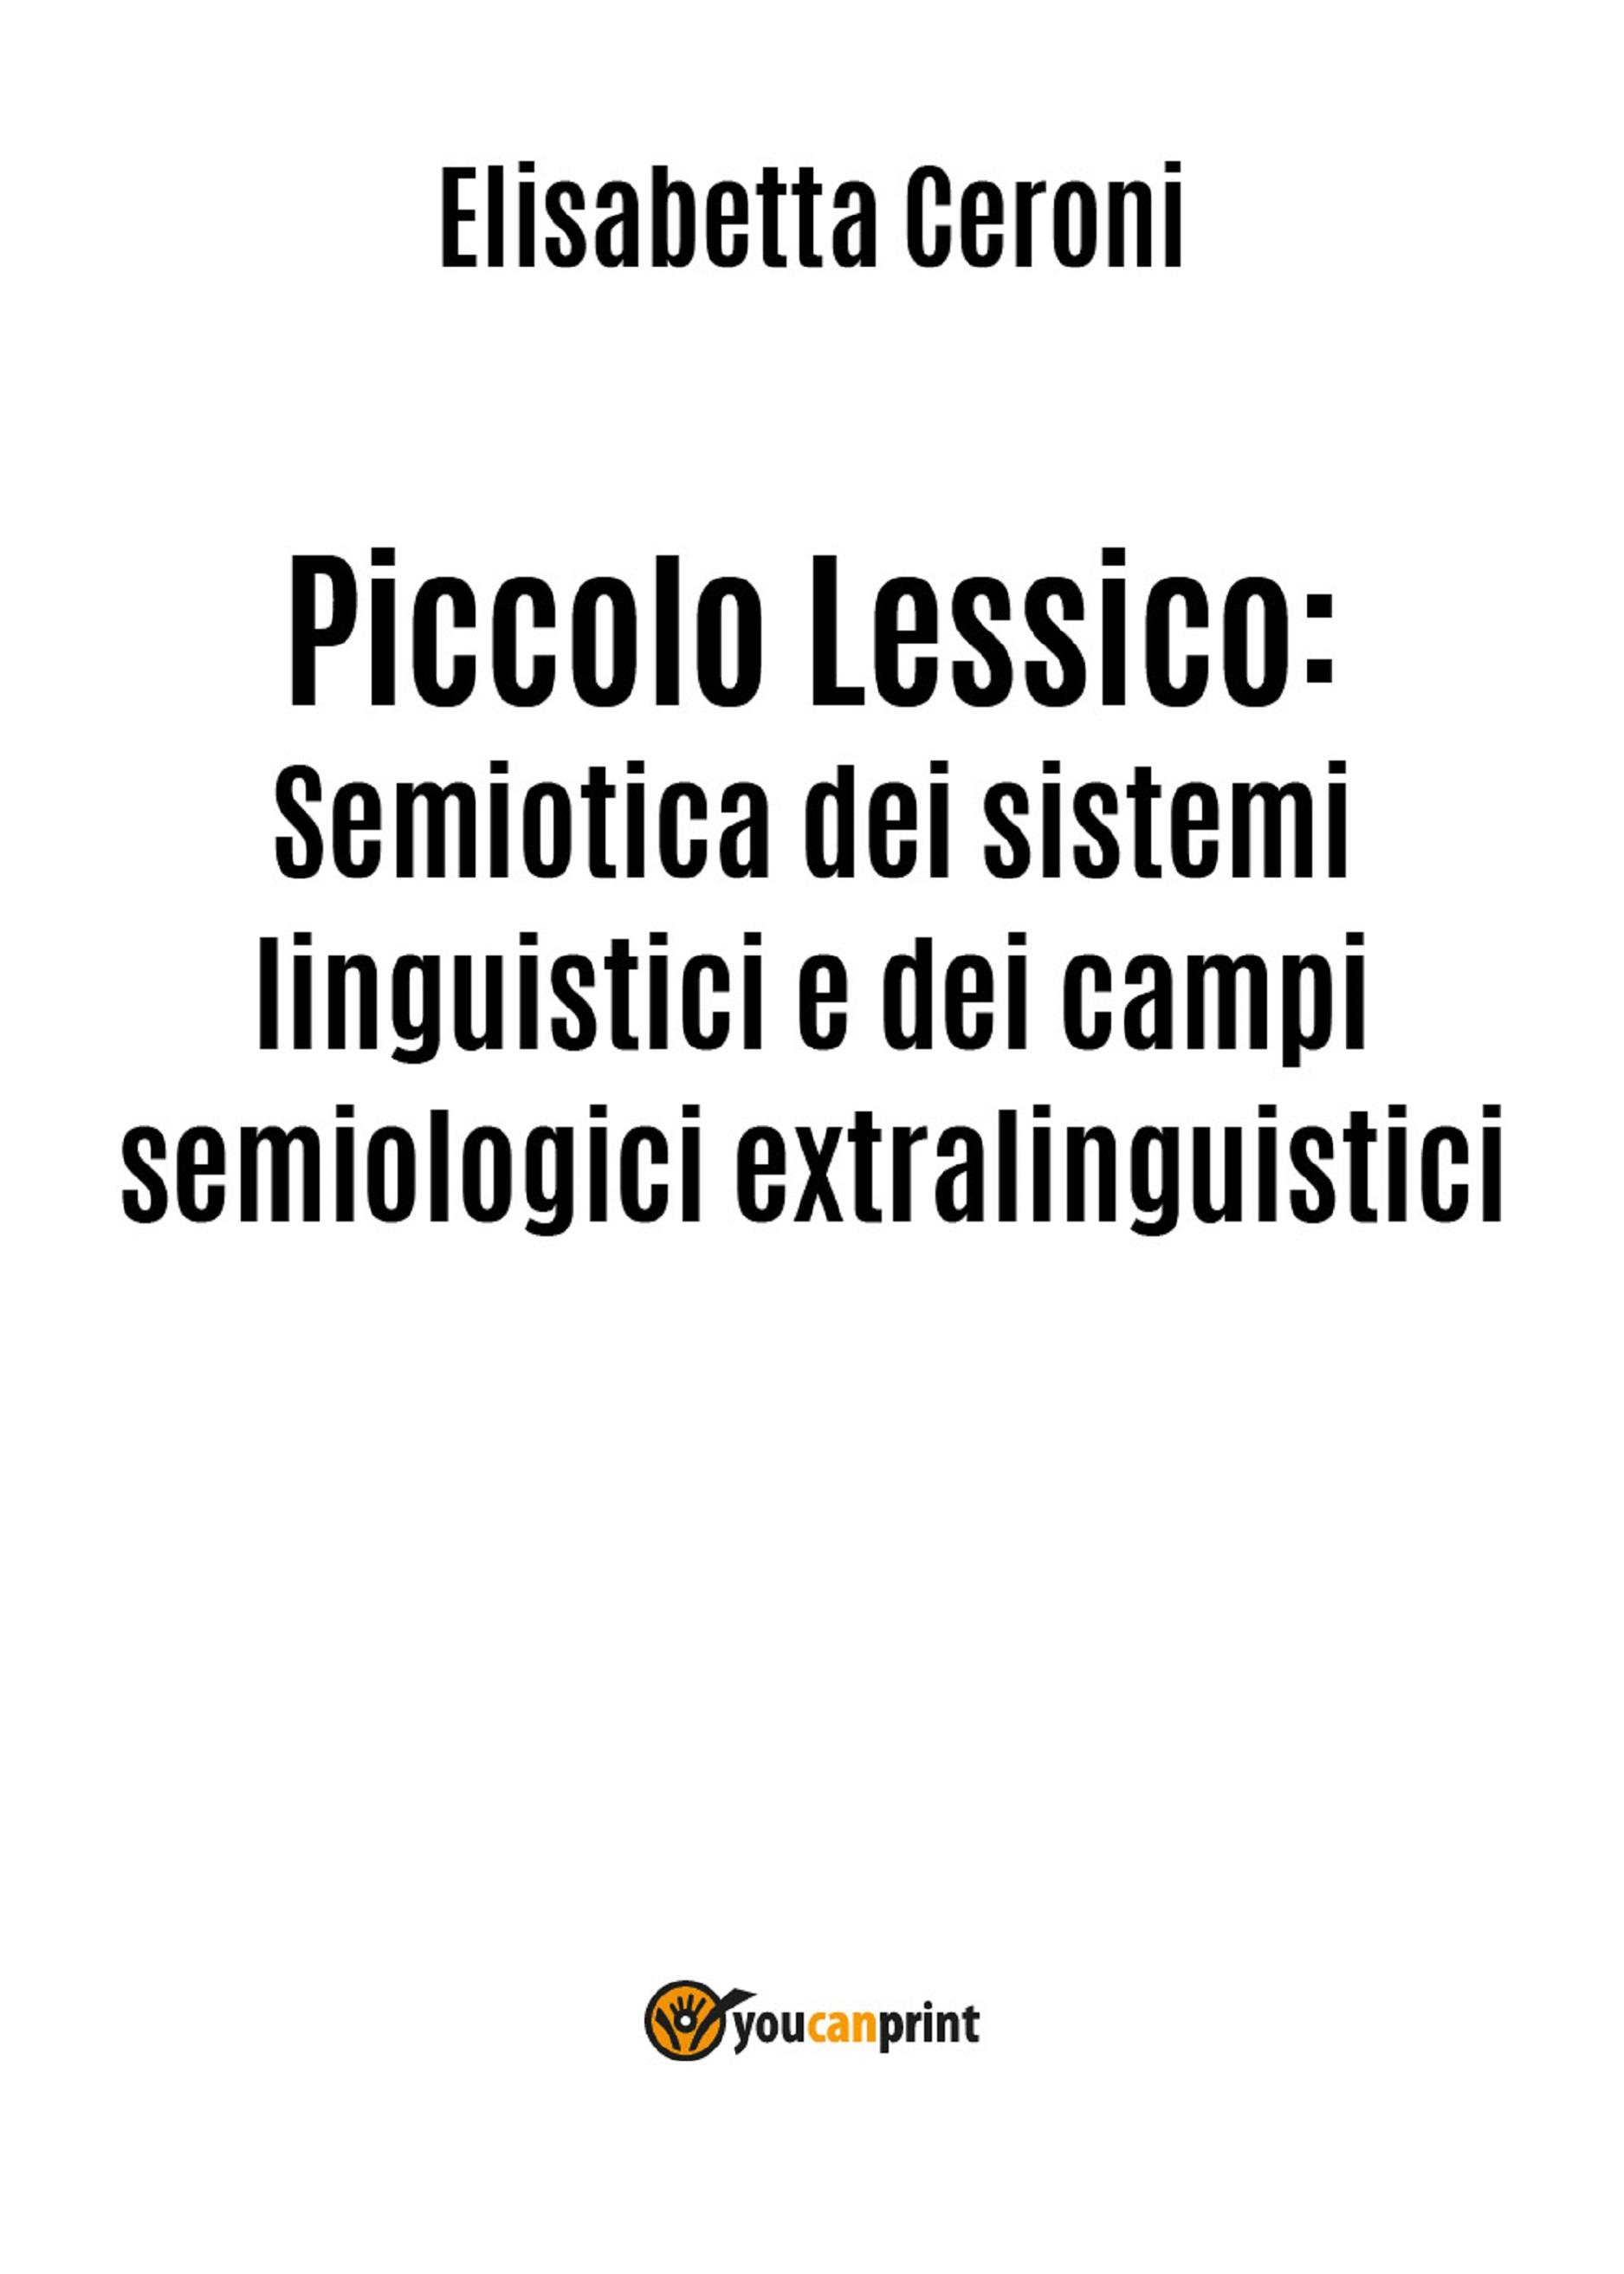 Piccolo Lessico: Semiotica dei sistemi linguistici e dei campi semiologici extralinguistici.